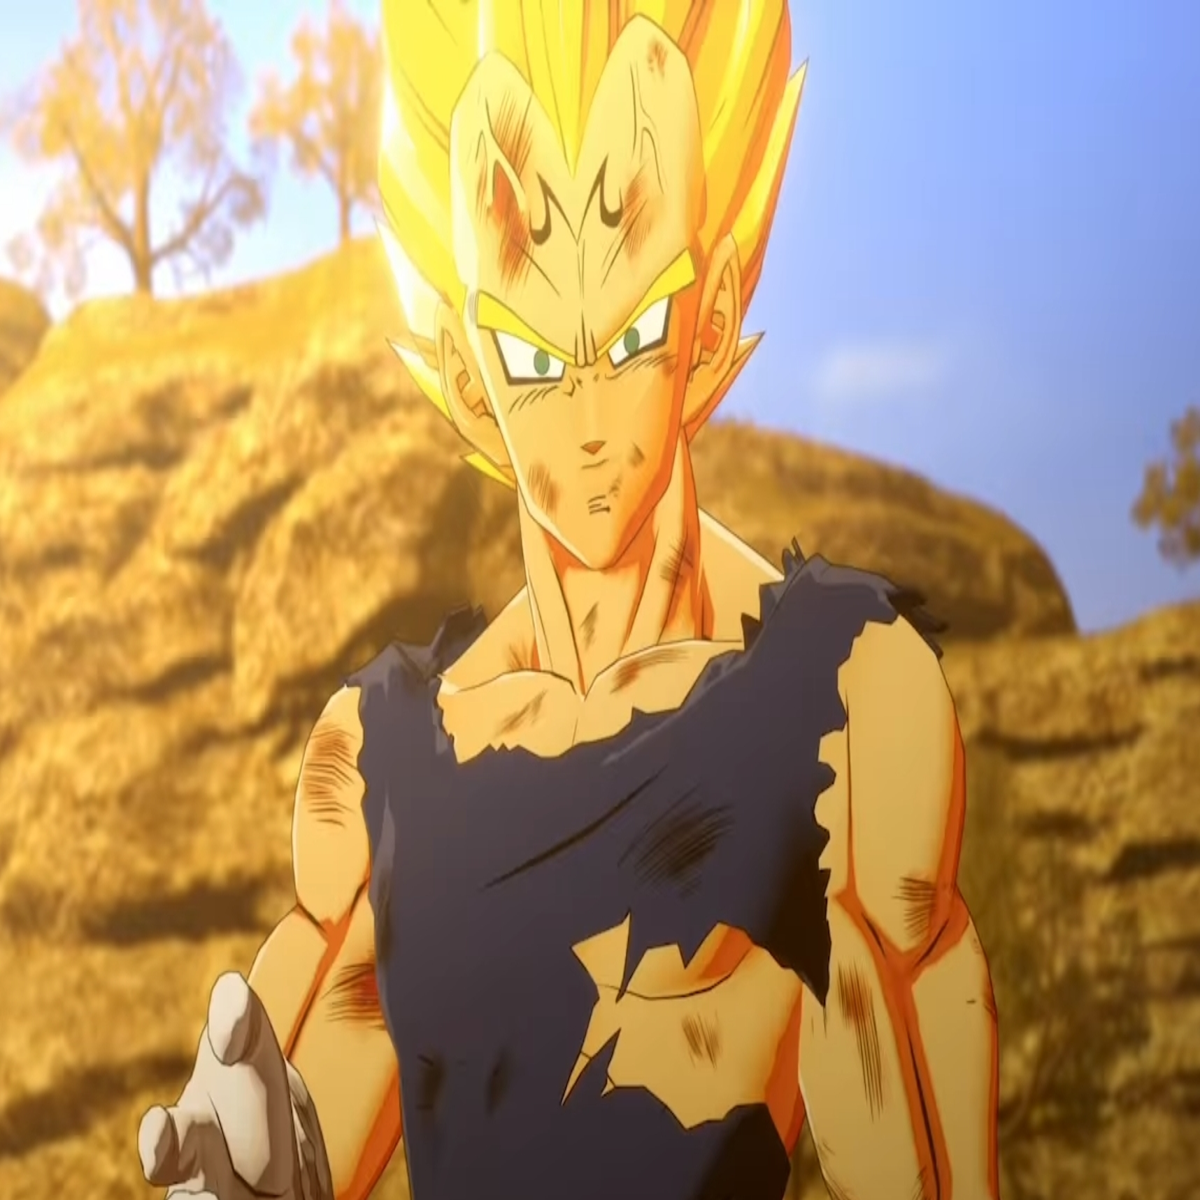 Dragon Ball Z: Kakarot recebe trailer para o DLC Torneio do Poder